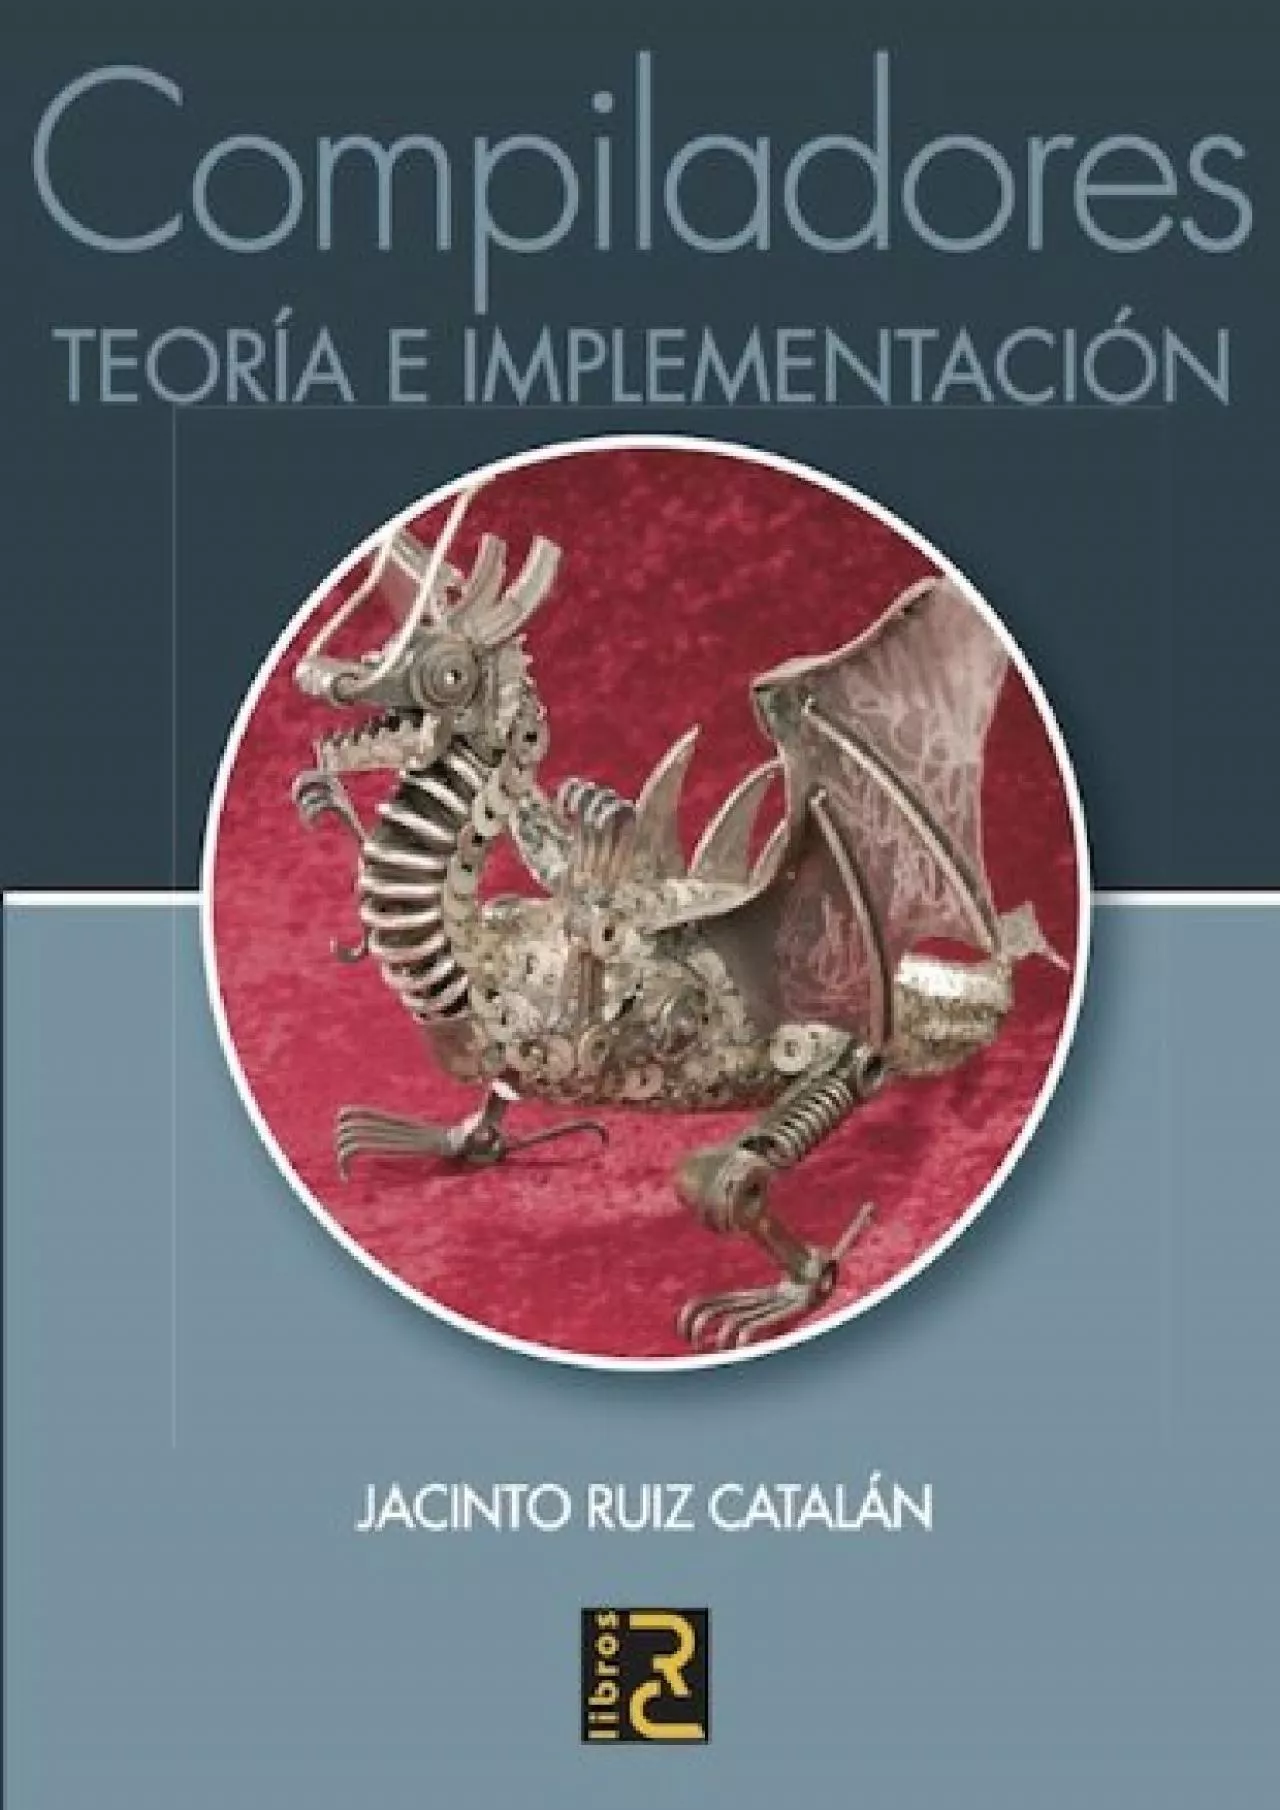 [READ]-Compiladores. Teoría e implementación (Spanish Edition)